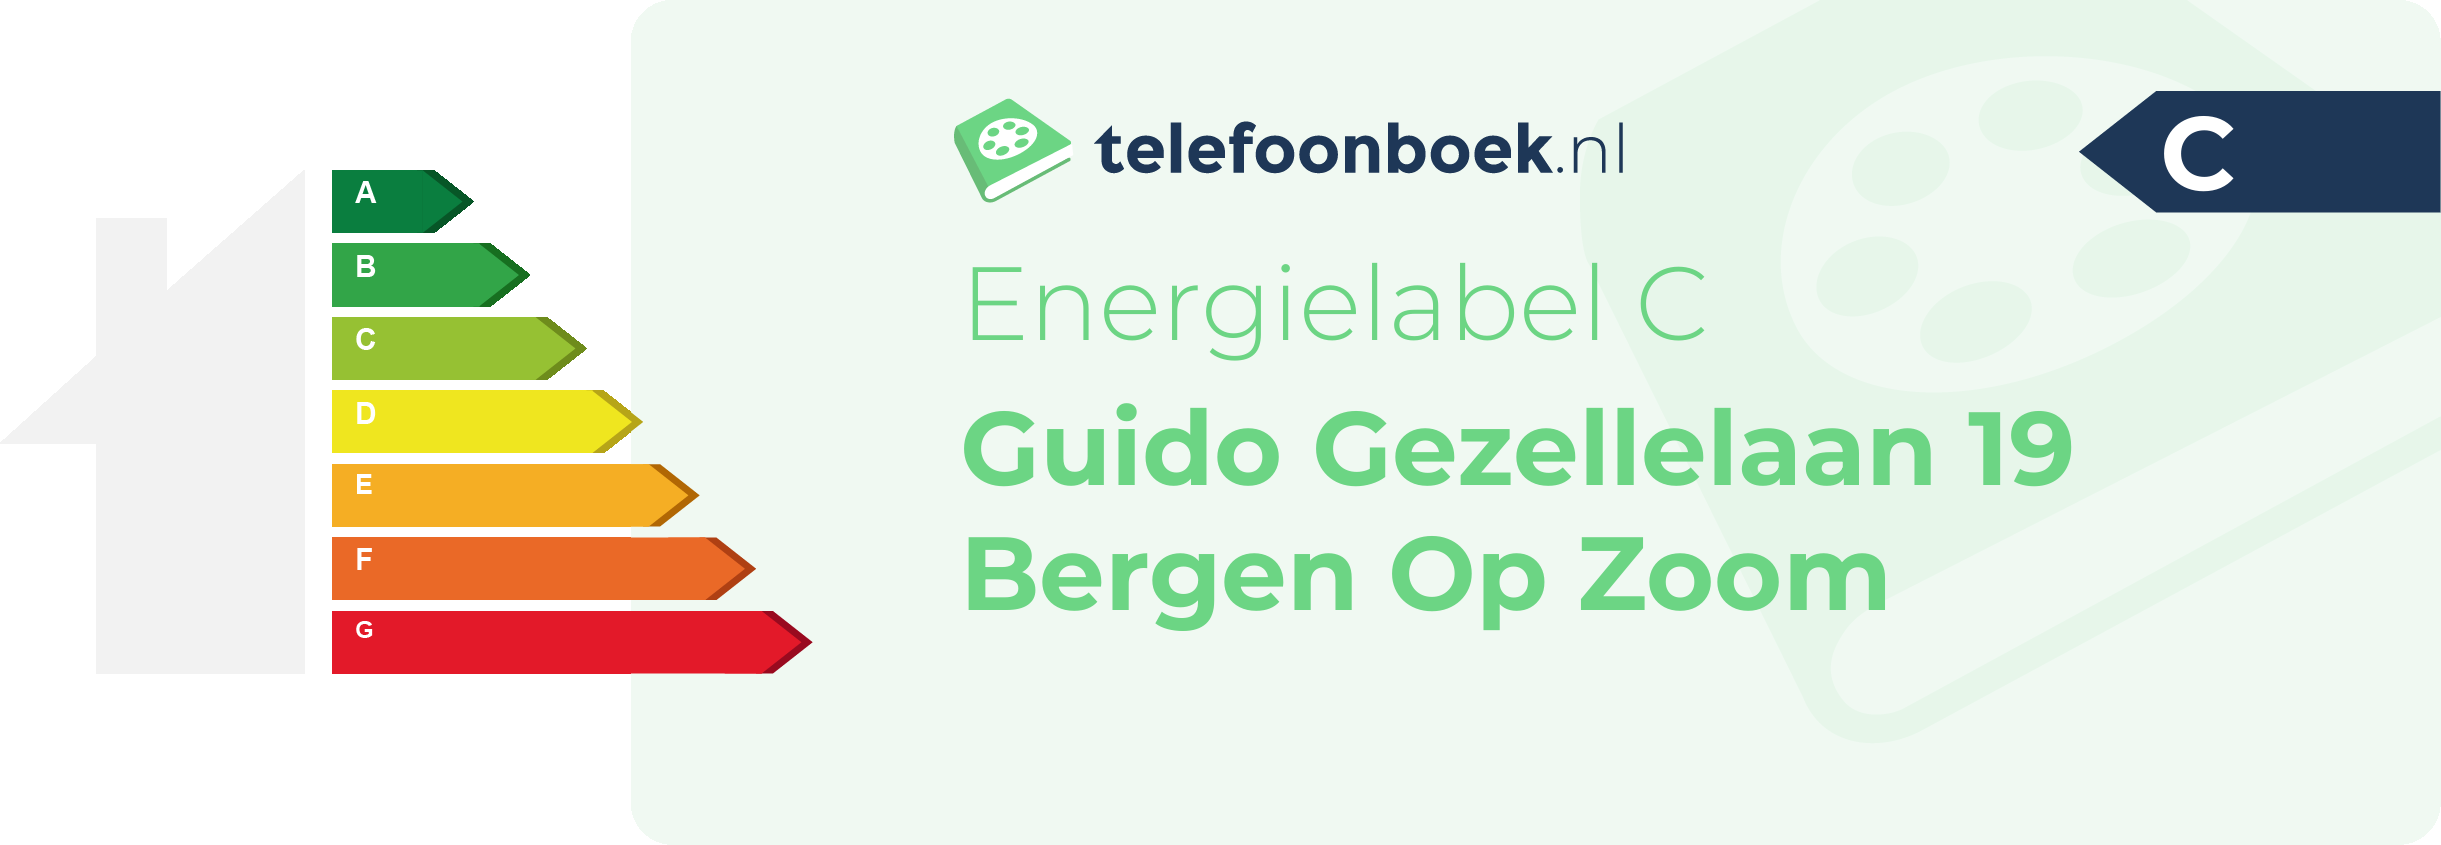 Energielabel Guido Gezellelaan 19 Bergen Op Zoom